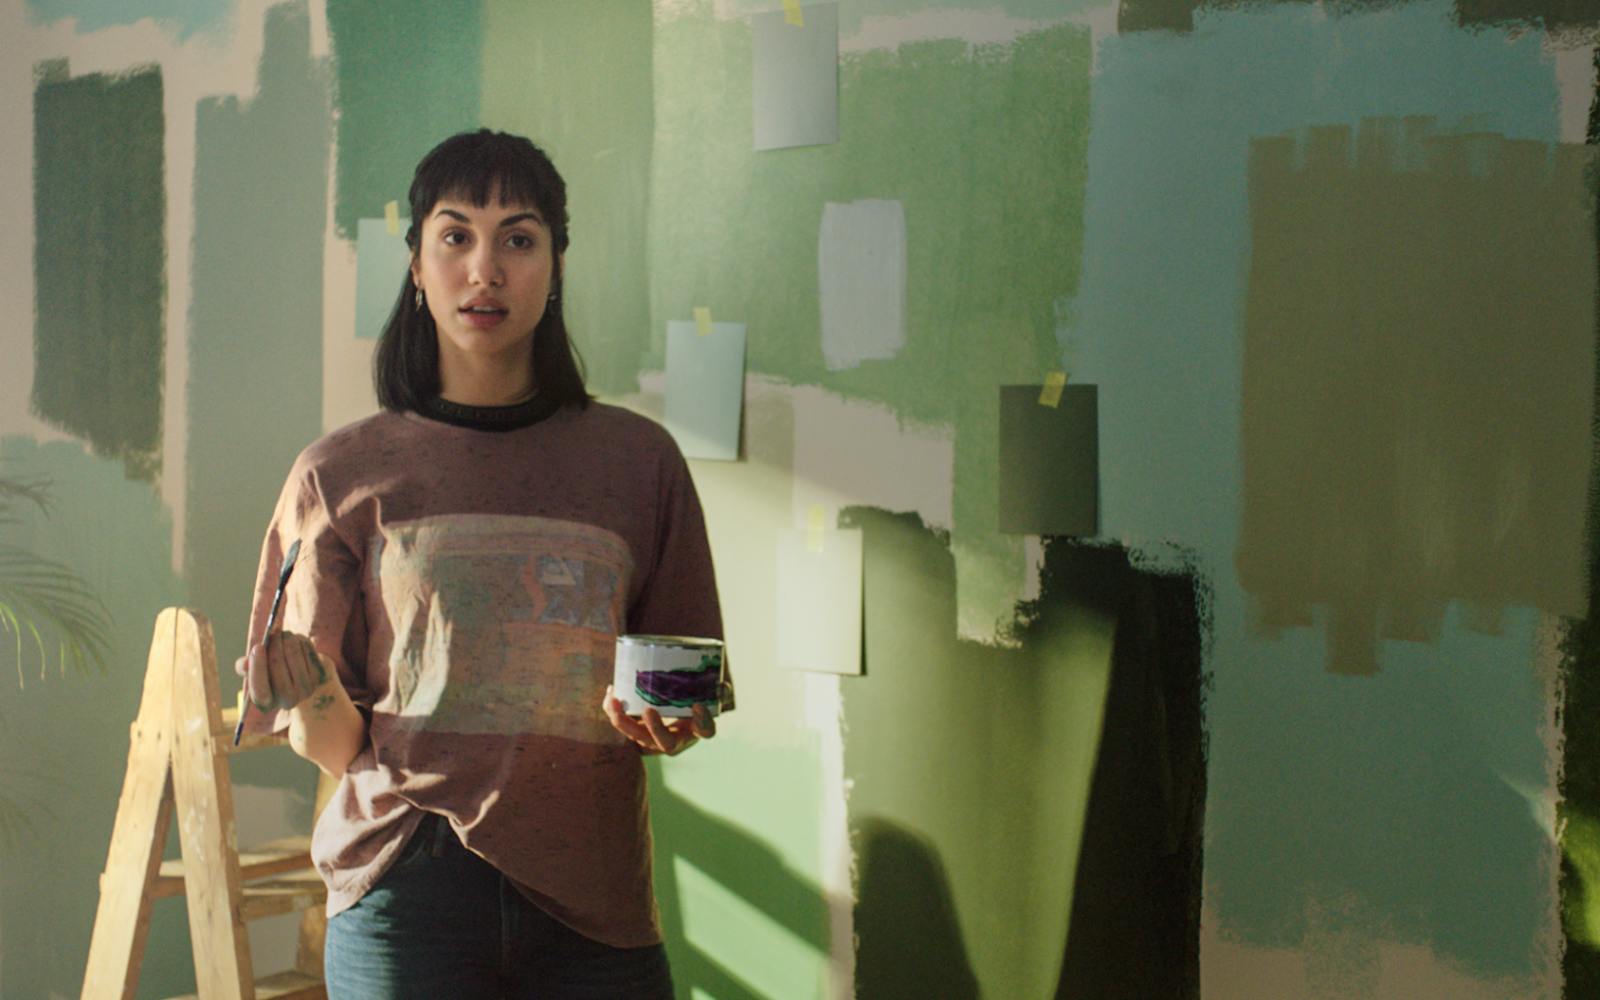 Kvinna provmålar olika nyanser av grönt på väggen